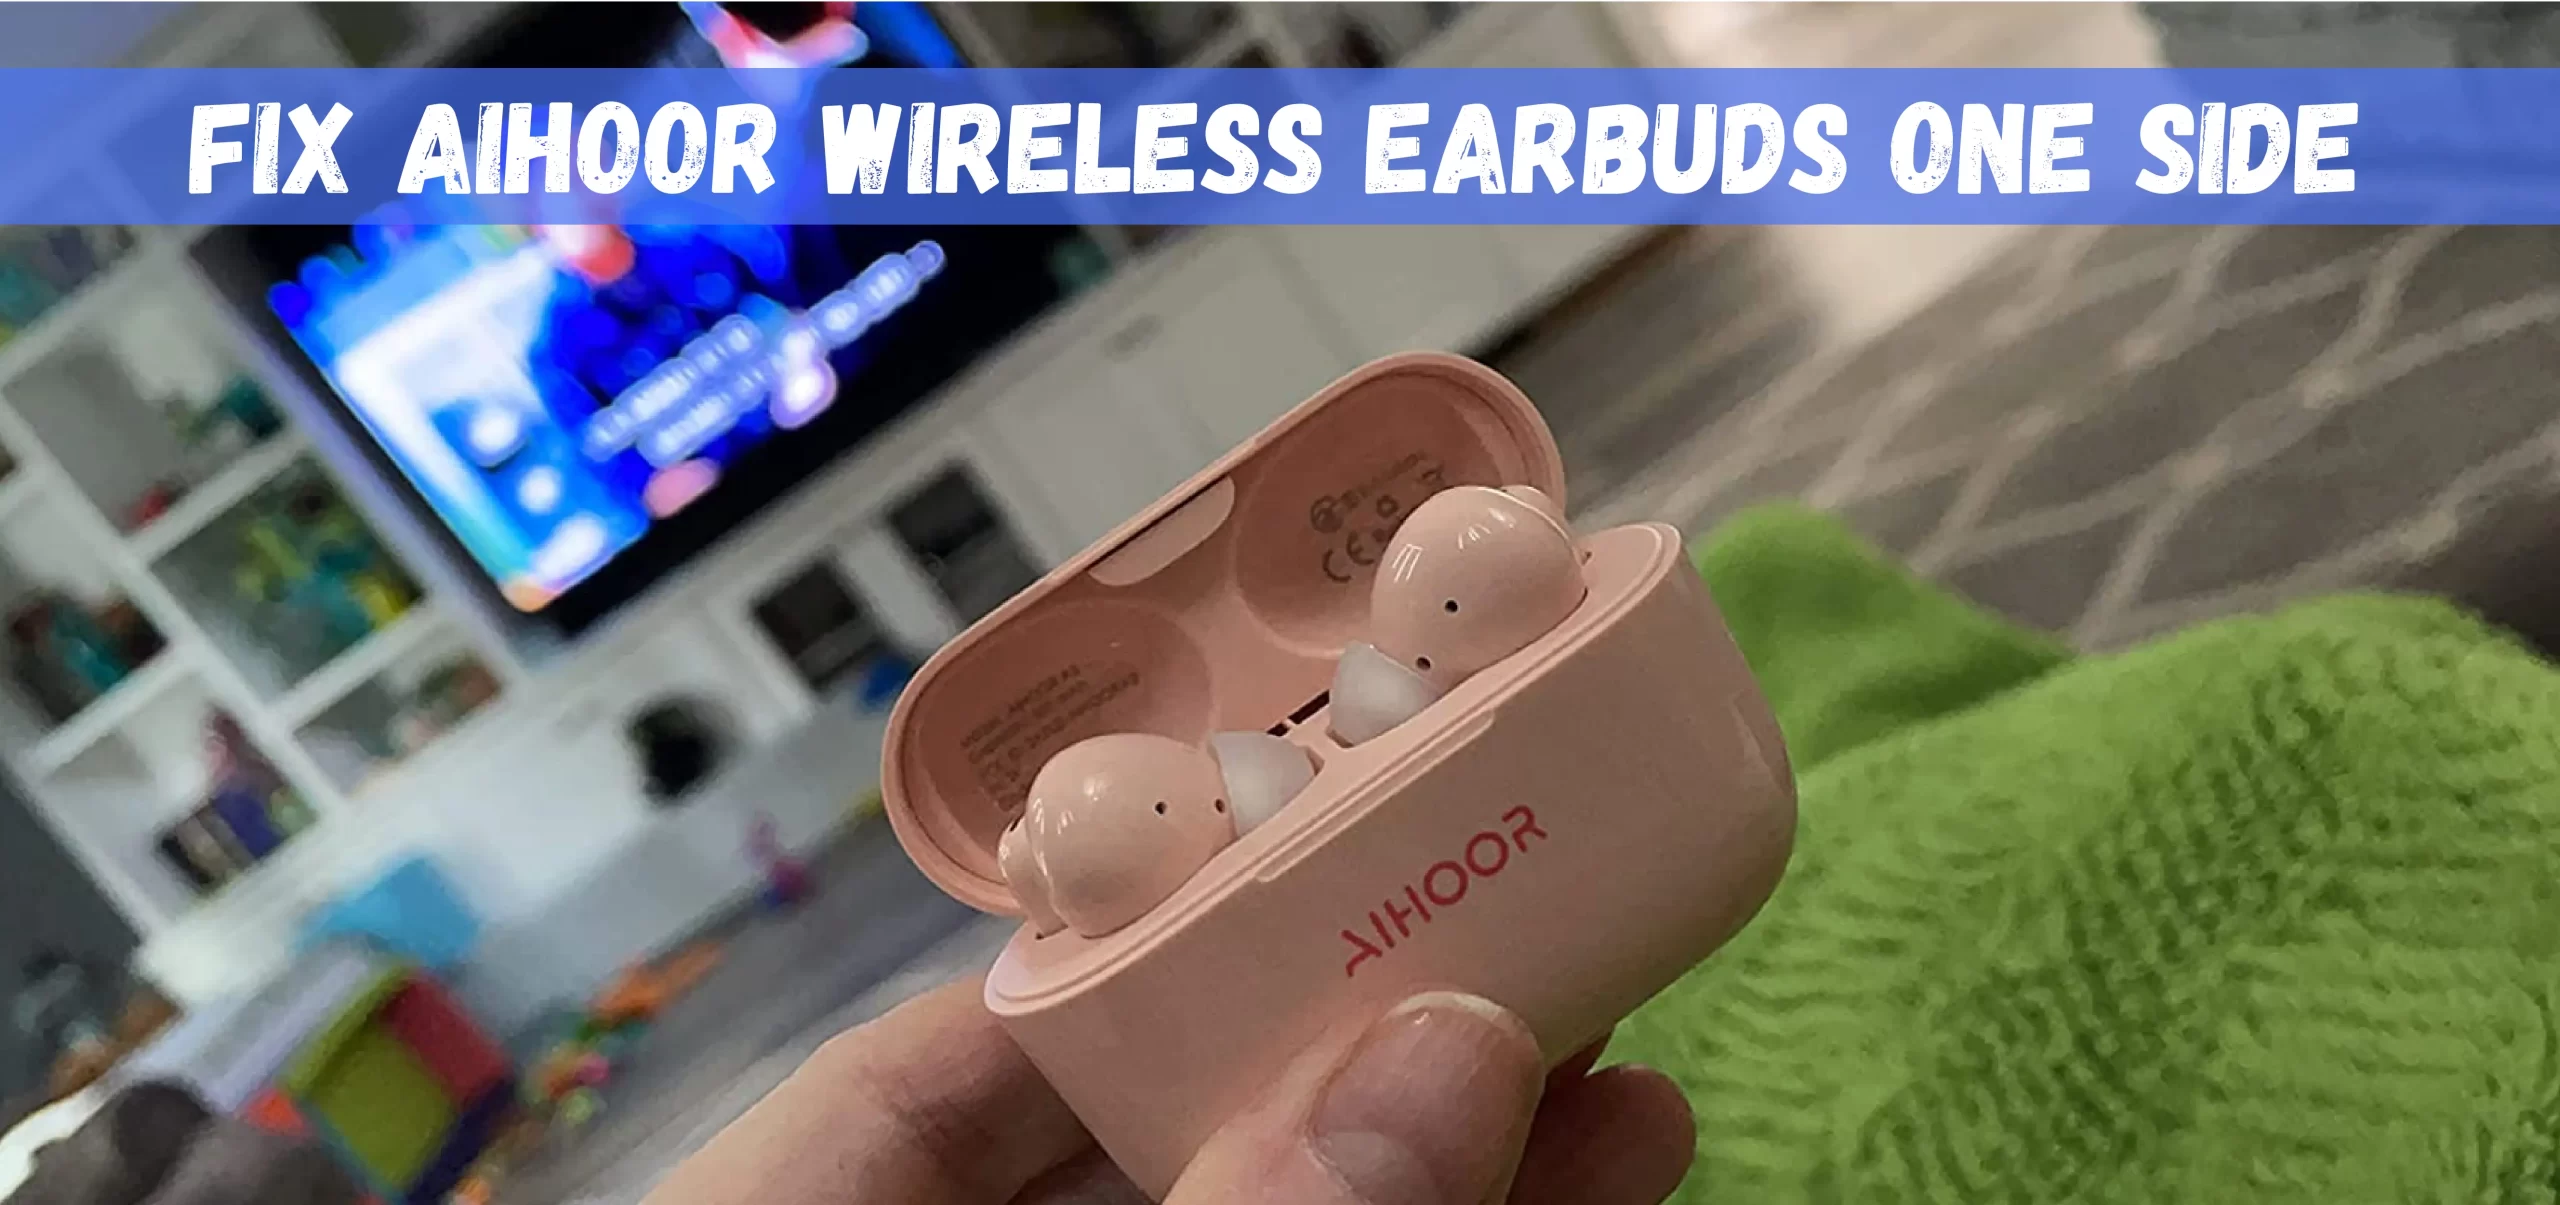 Aihoor Wireless Earbuds One Side Not Working